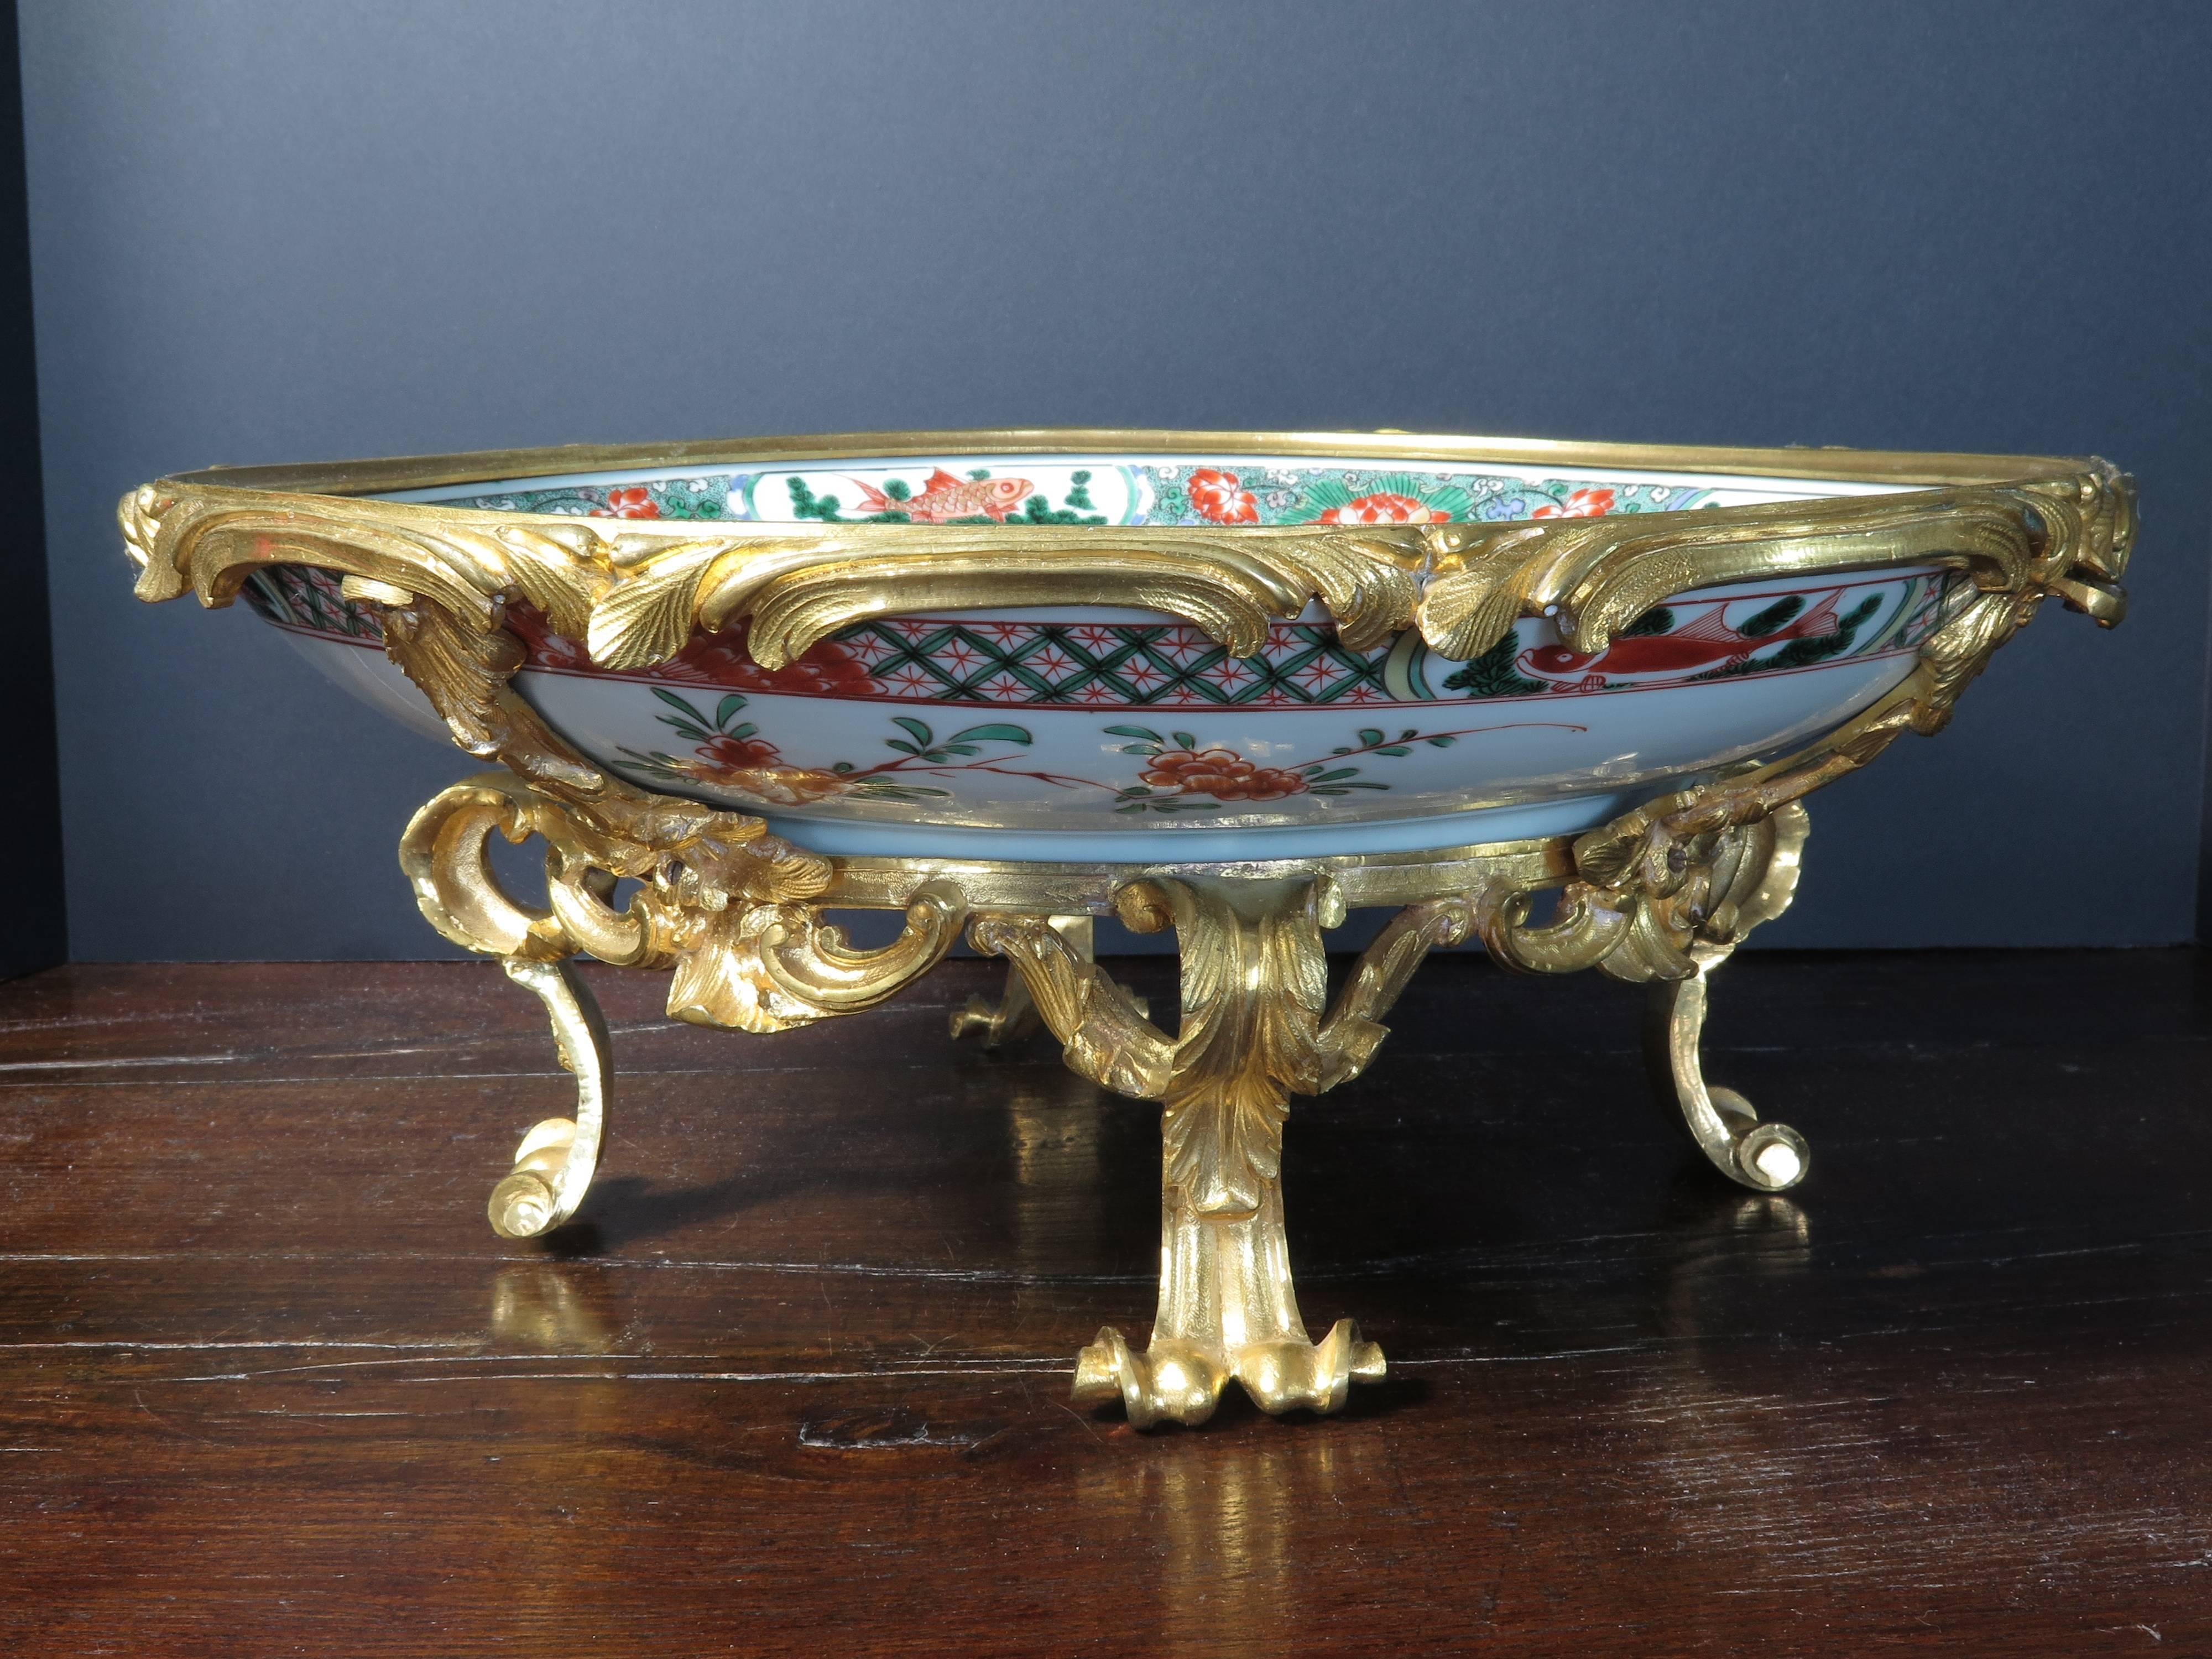 Ce magnifique centre de table a été créé par le mariage fortuit d'un chargeur en porcelaine émaillée Famille verte du XVIIe siècle de la période Kangxi avec un ensemble de montures en bronze doré français du XIXe siècle.

Ce chargeur en porcelaine